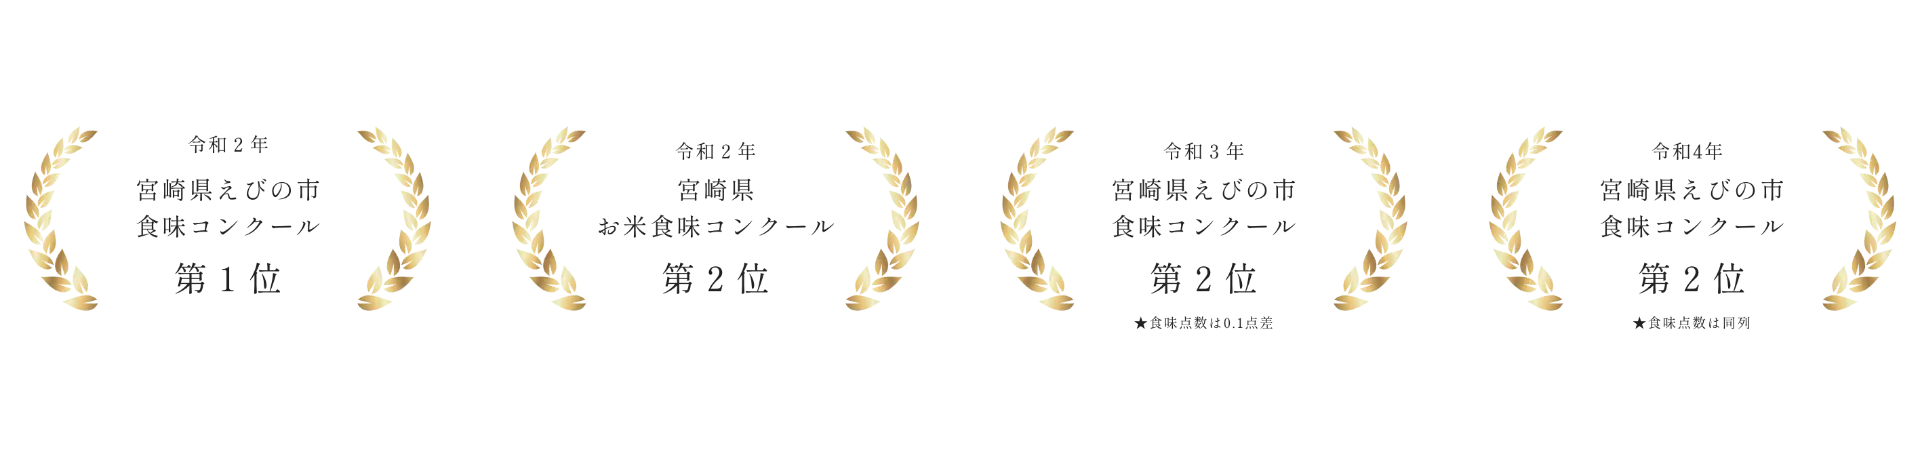 宮崎県えびの市で1位をとったお米をつくる農園